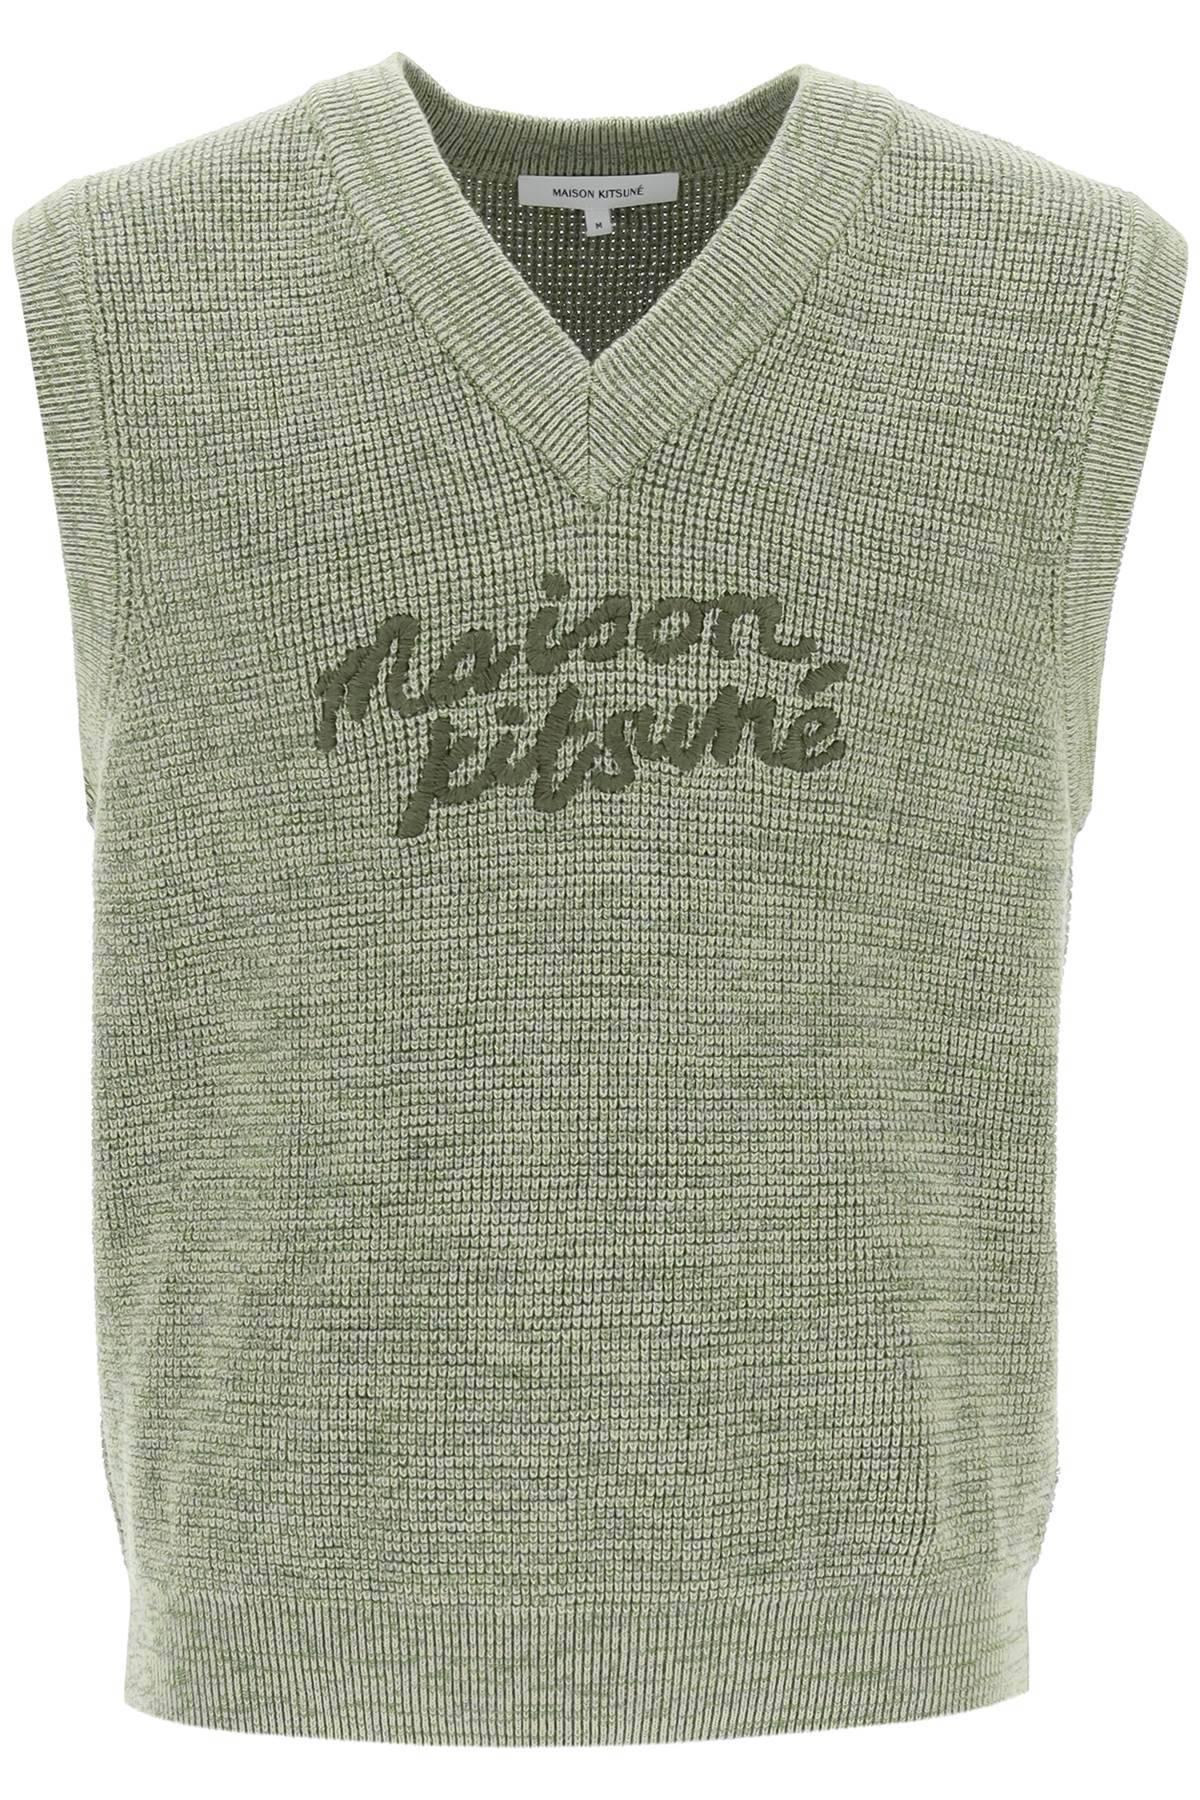 Maison Kitsuné MAISON KITSUNE "oversized vest with embroidered logo